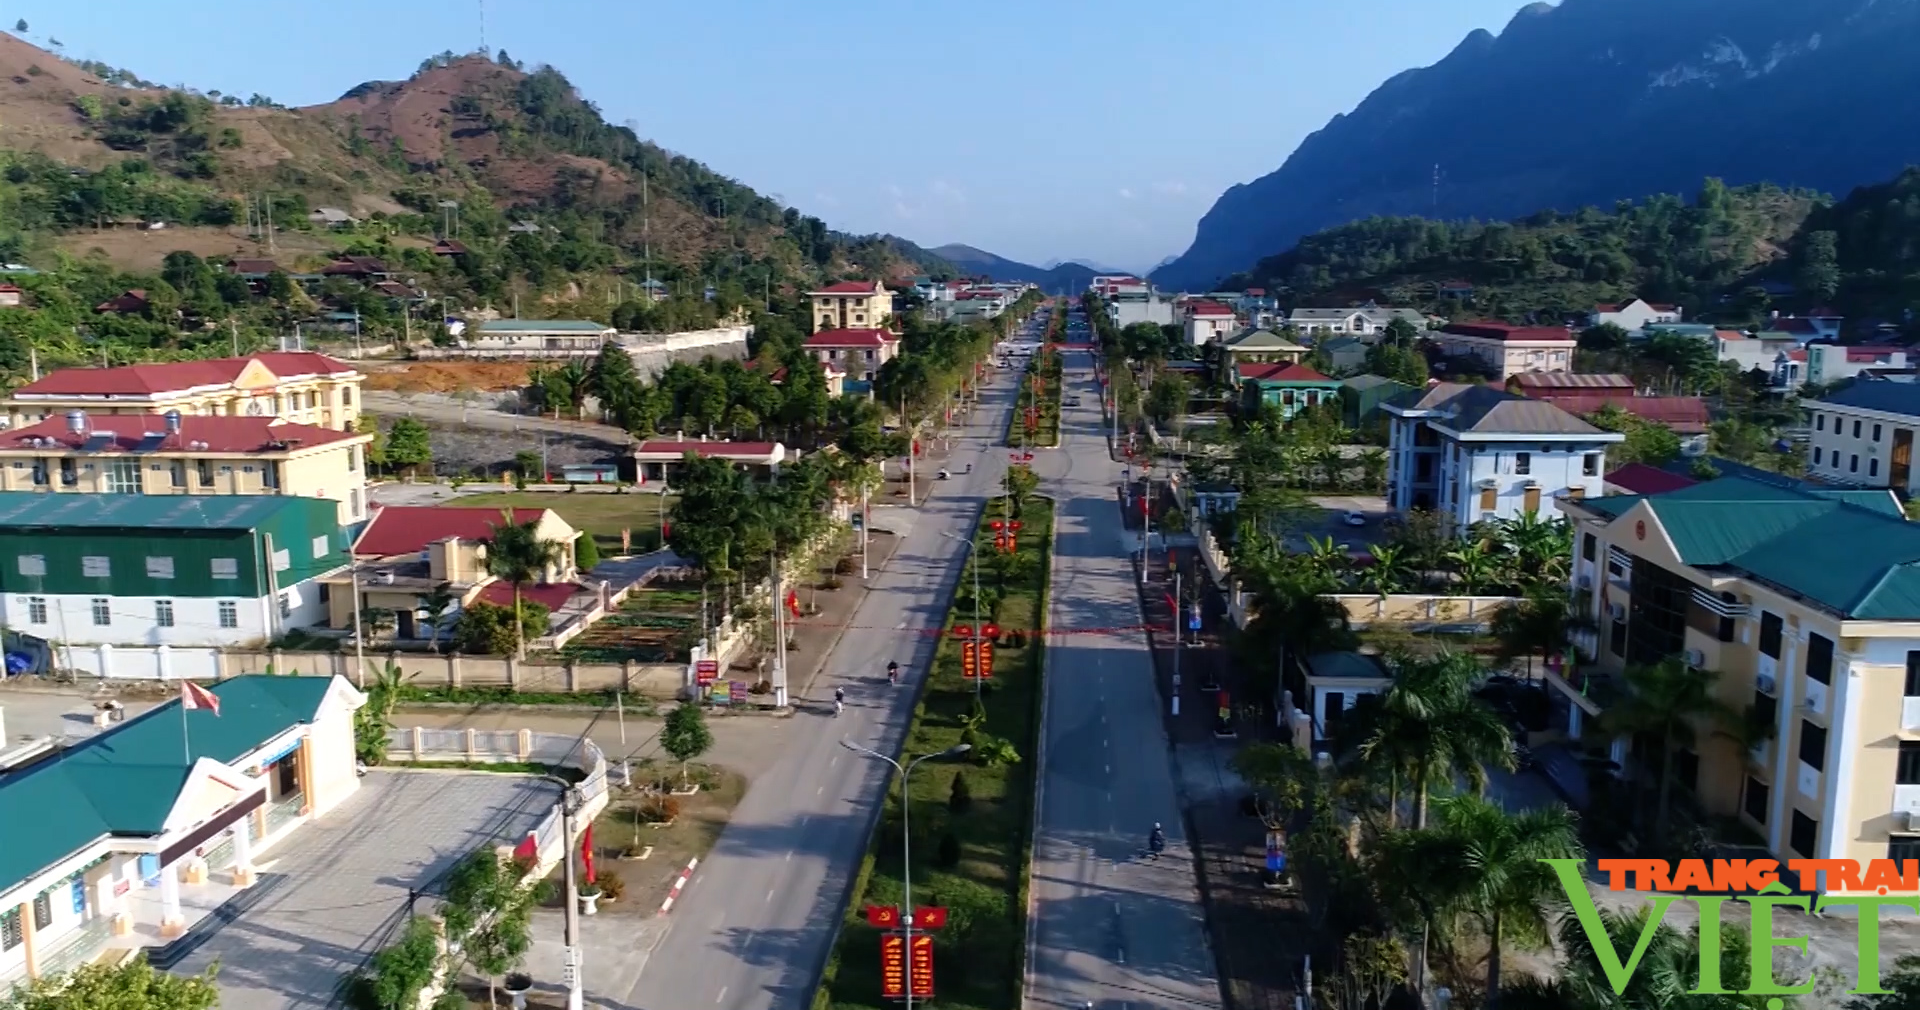 Huyện đoàn Quỳnh Nhai (Sơn La) chung tay xây dựng nông thôn mới - Ảnh 2.